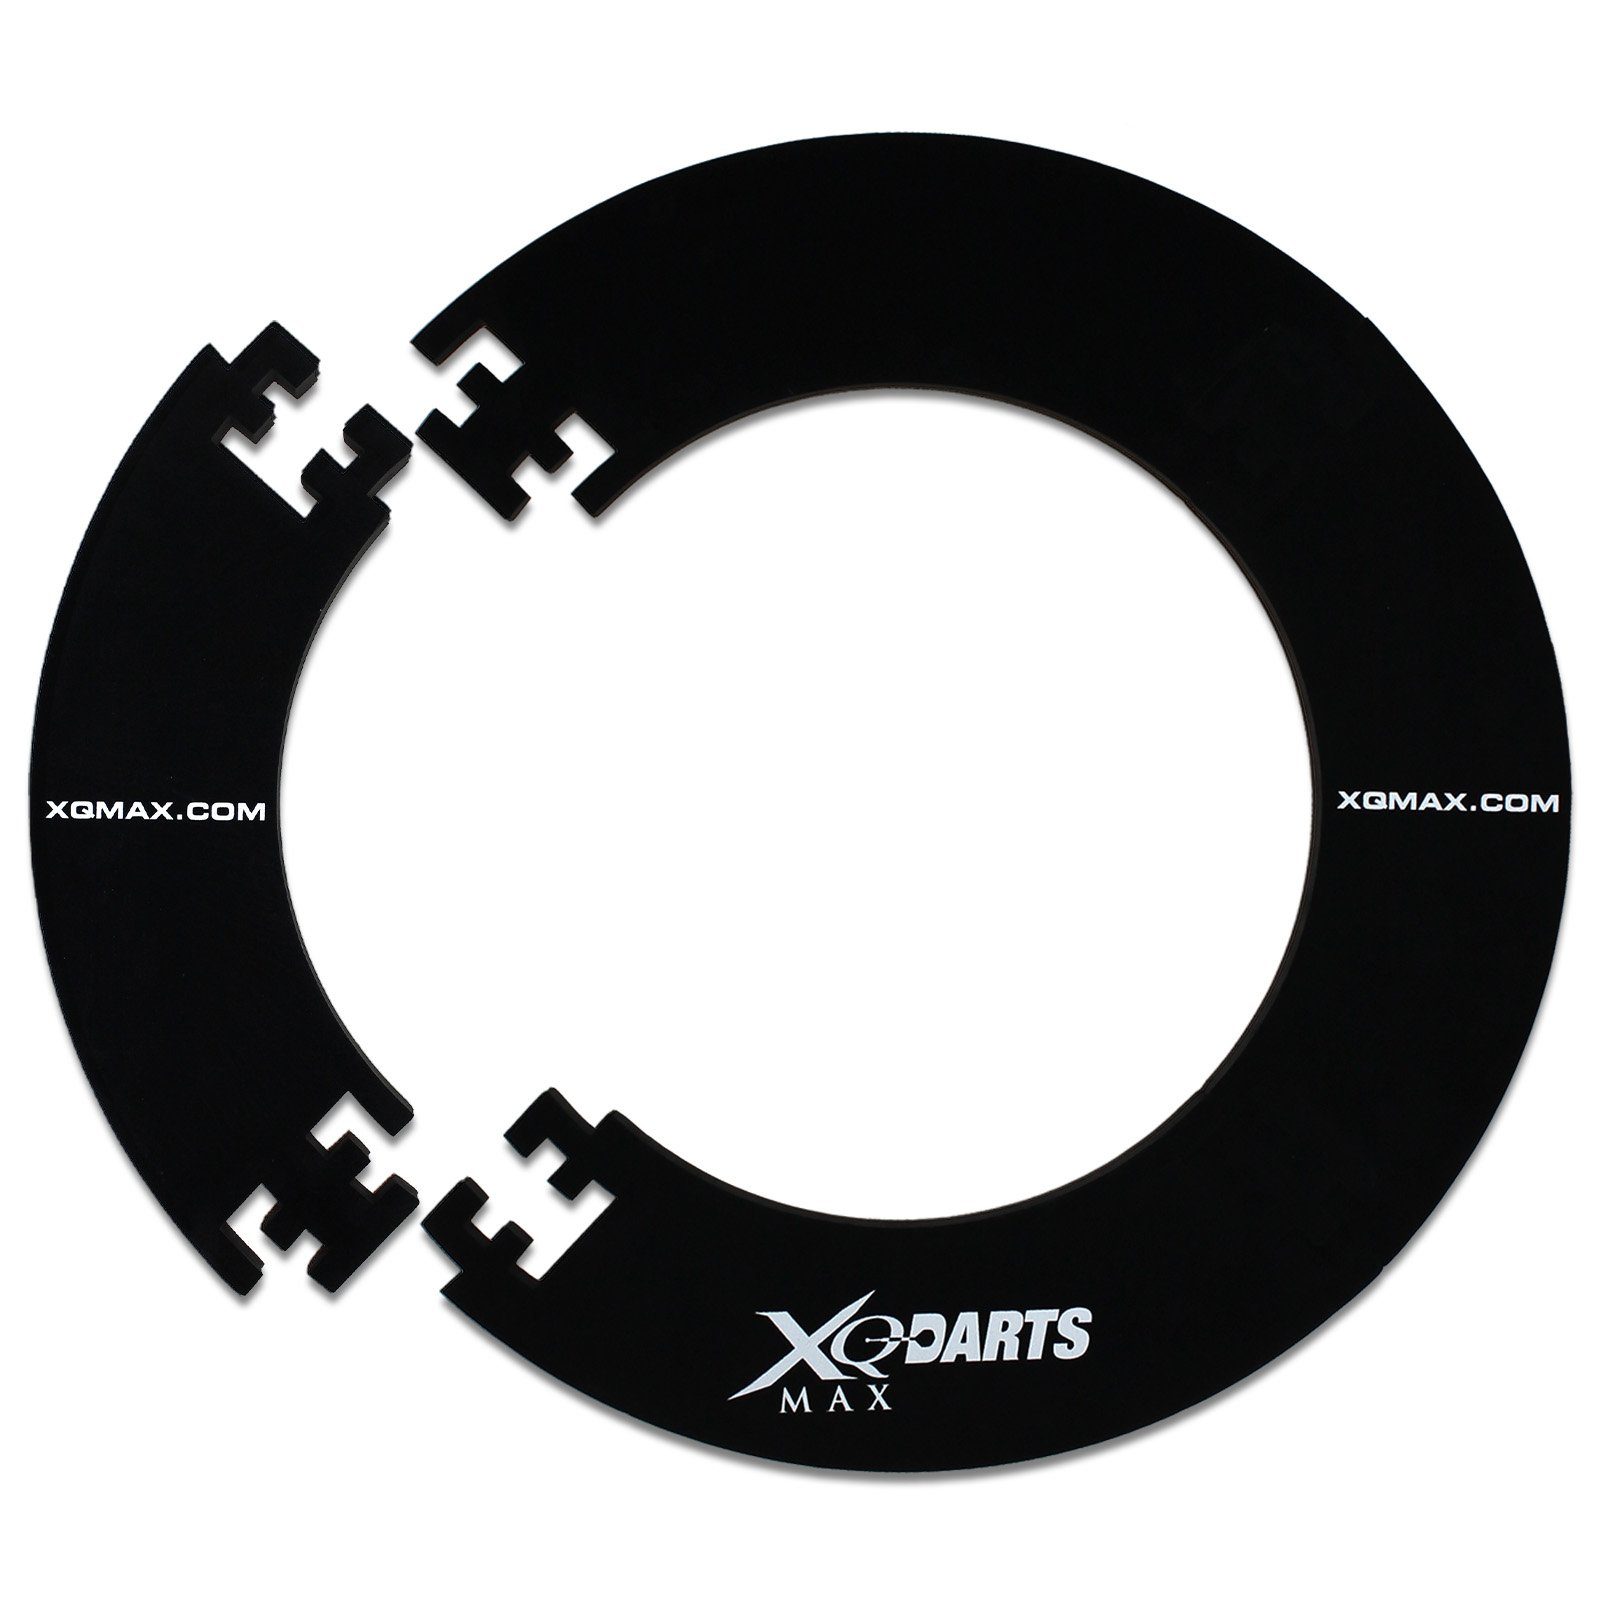 Pfeile Ring Starter-Set Dart (Komplettset, XQMAX schwarz, Surround mit Marker Dartset), 6 inkl. Profi Dartscheibe Spielstandtafel